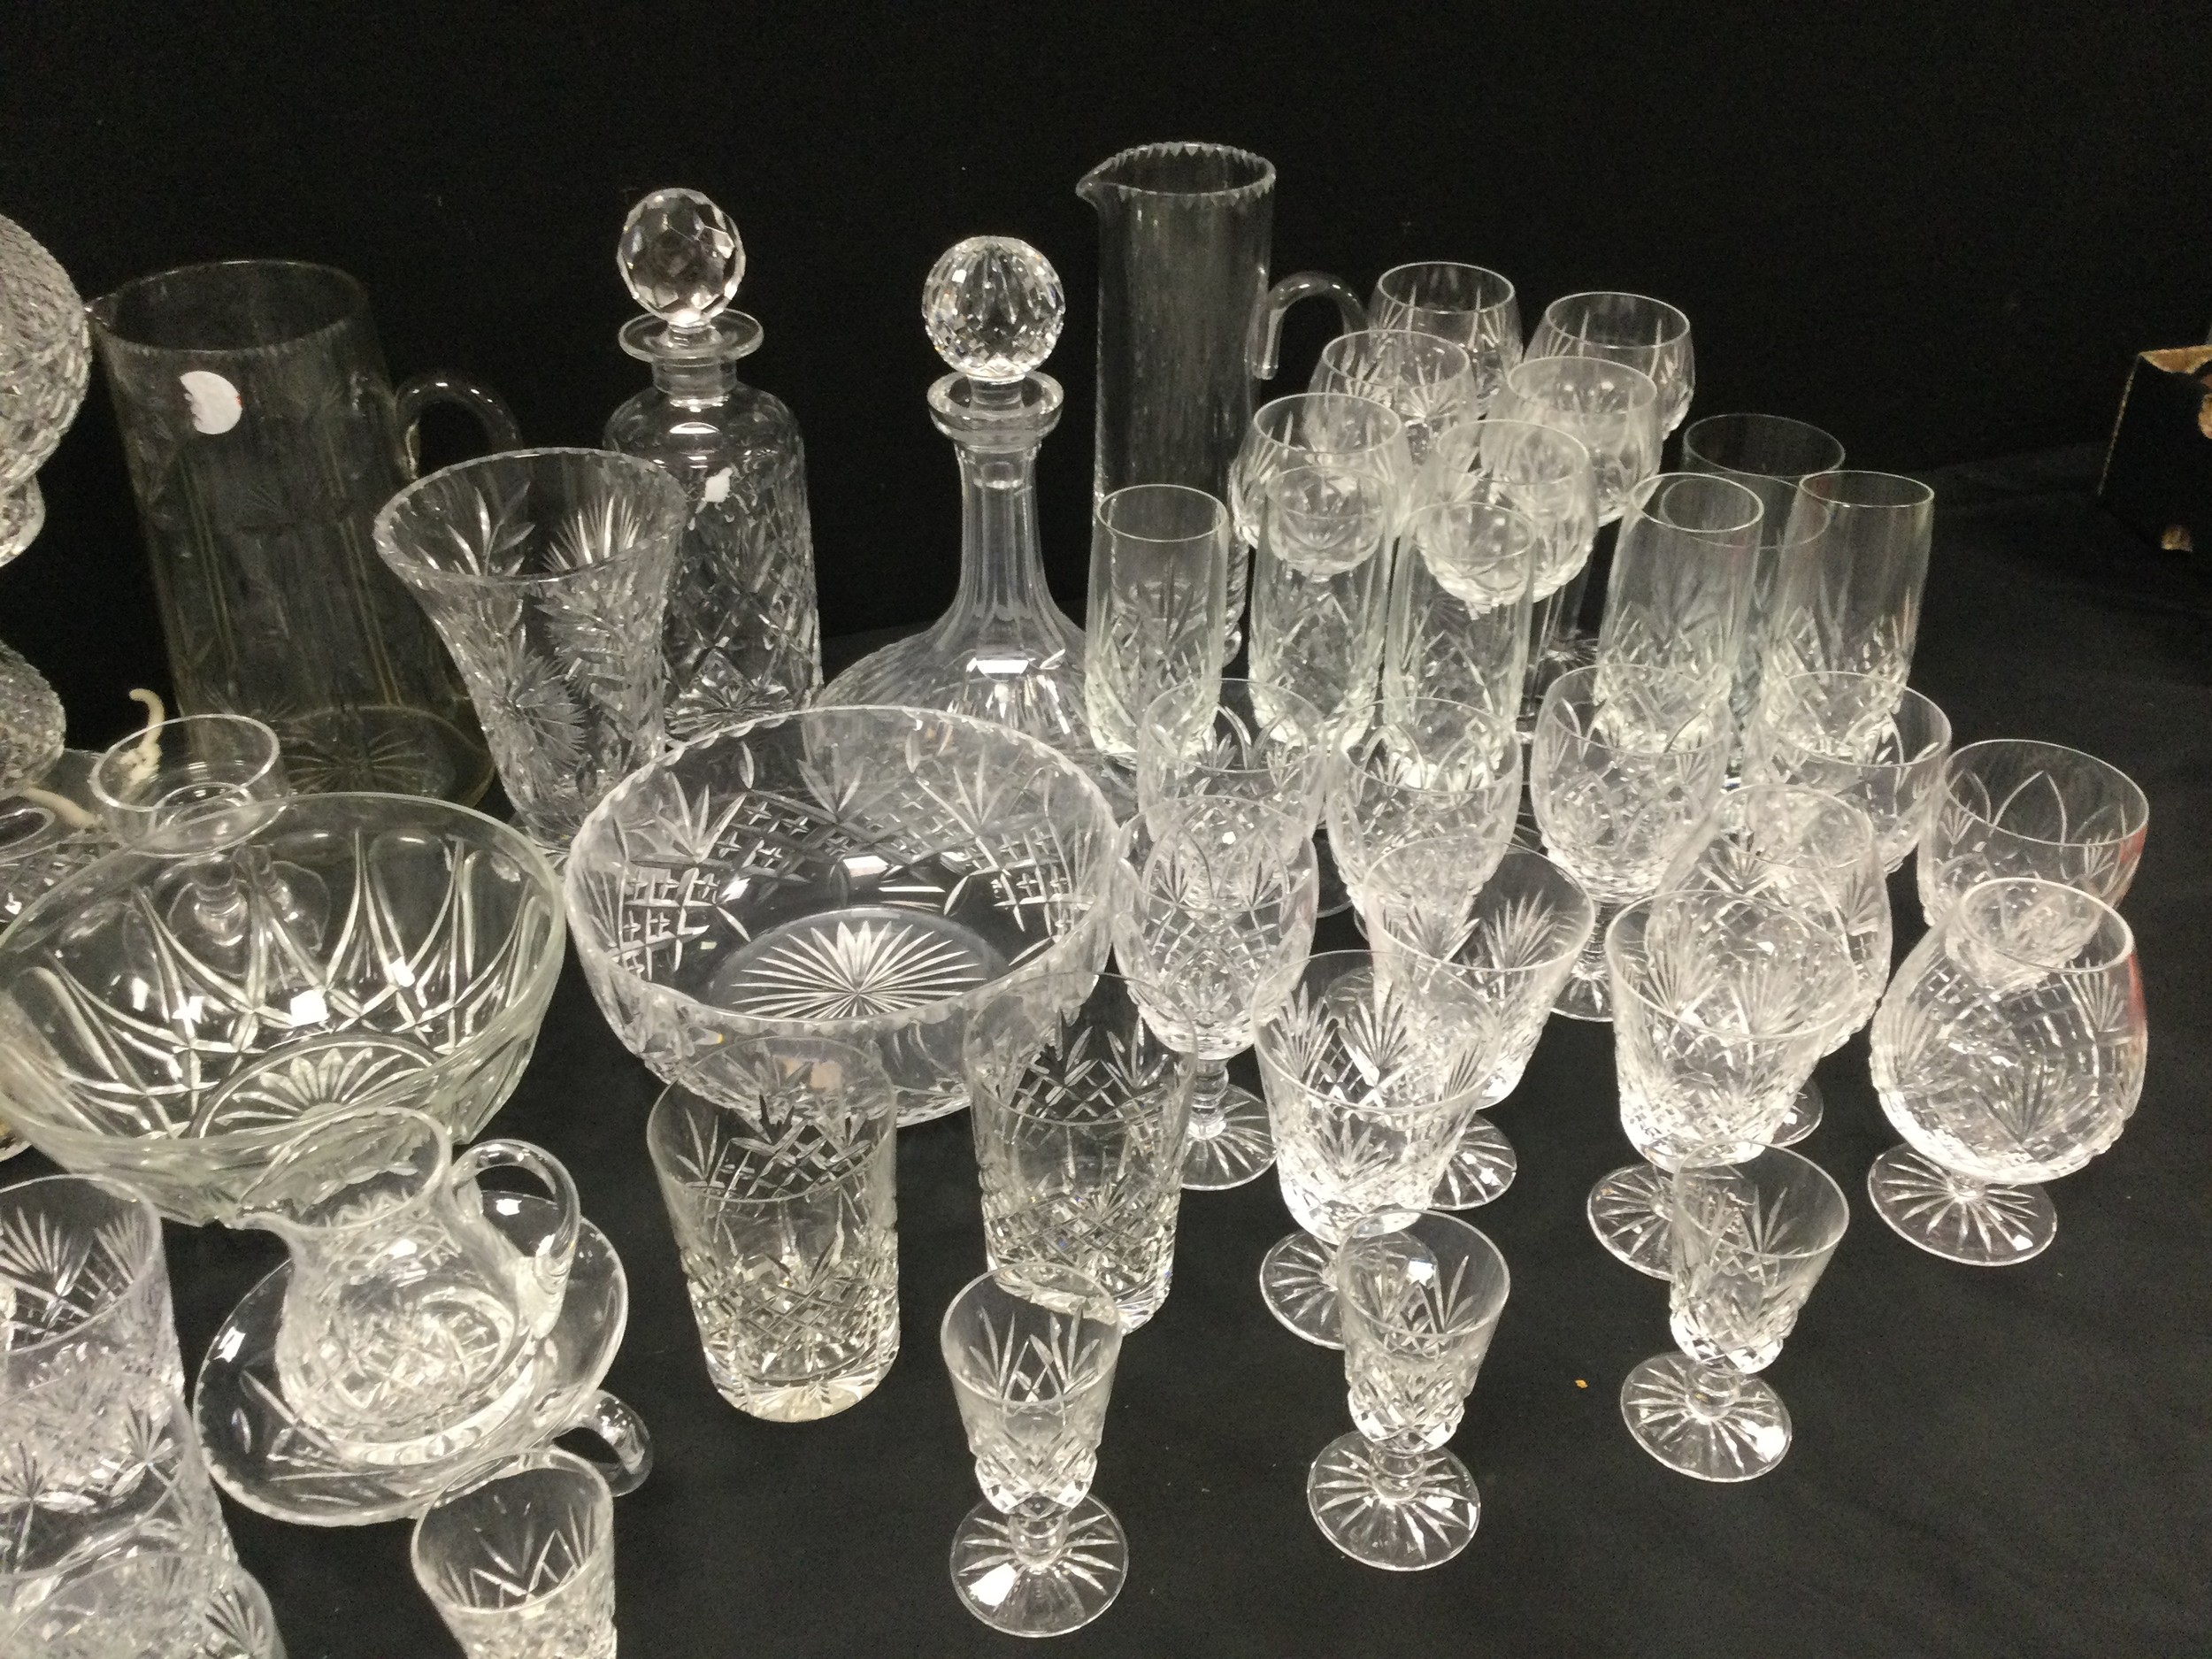 Glass ware - cut glass mushroom lamp, 35cm high, six cut wine glasses, six champagne flutes, six - Image 3 of 3